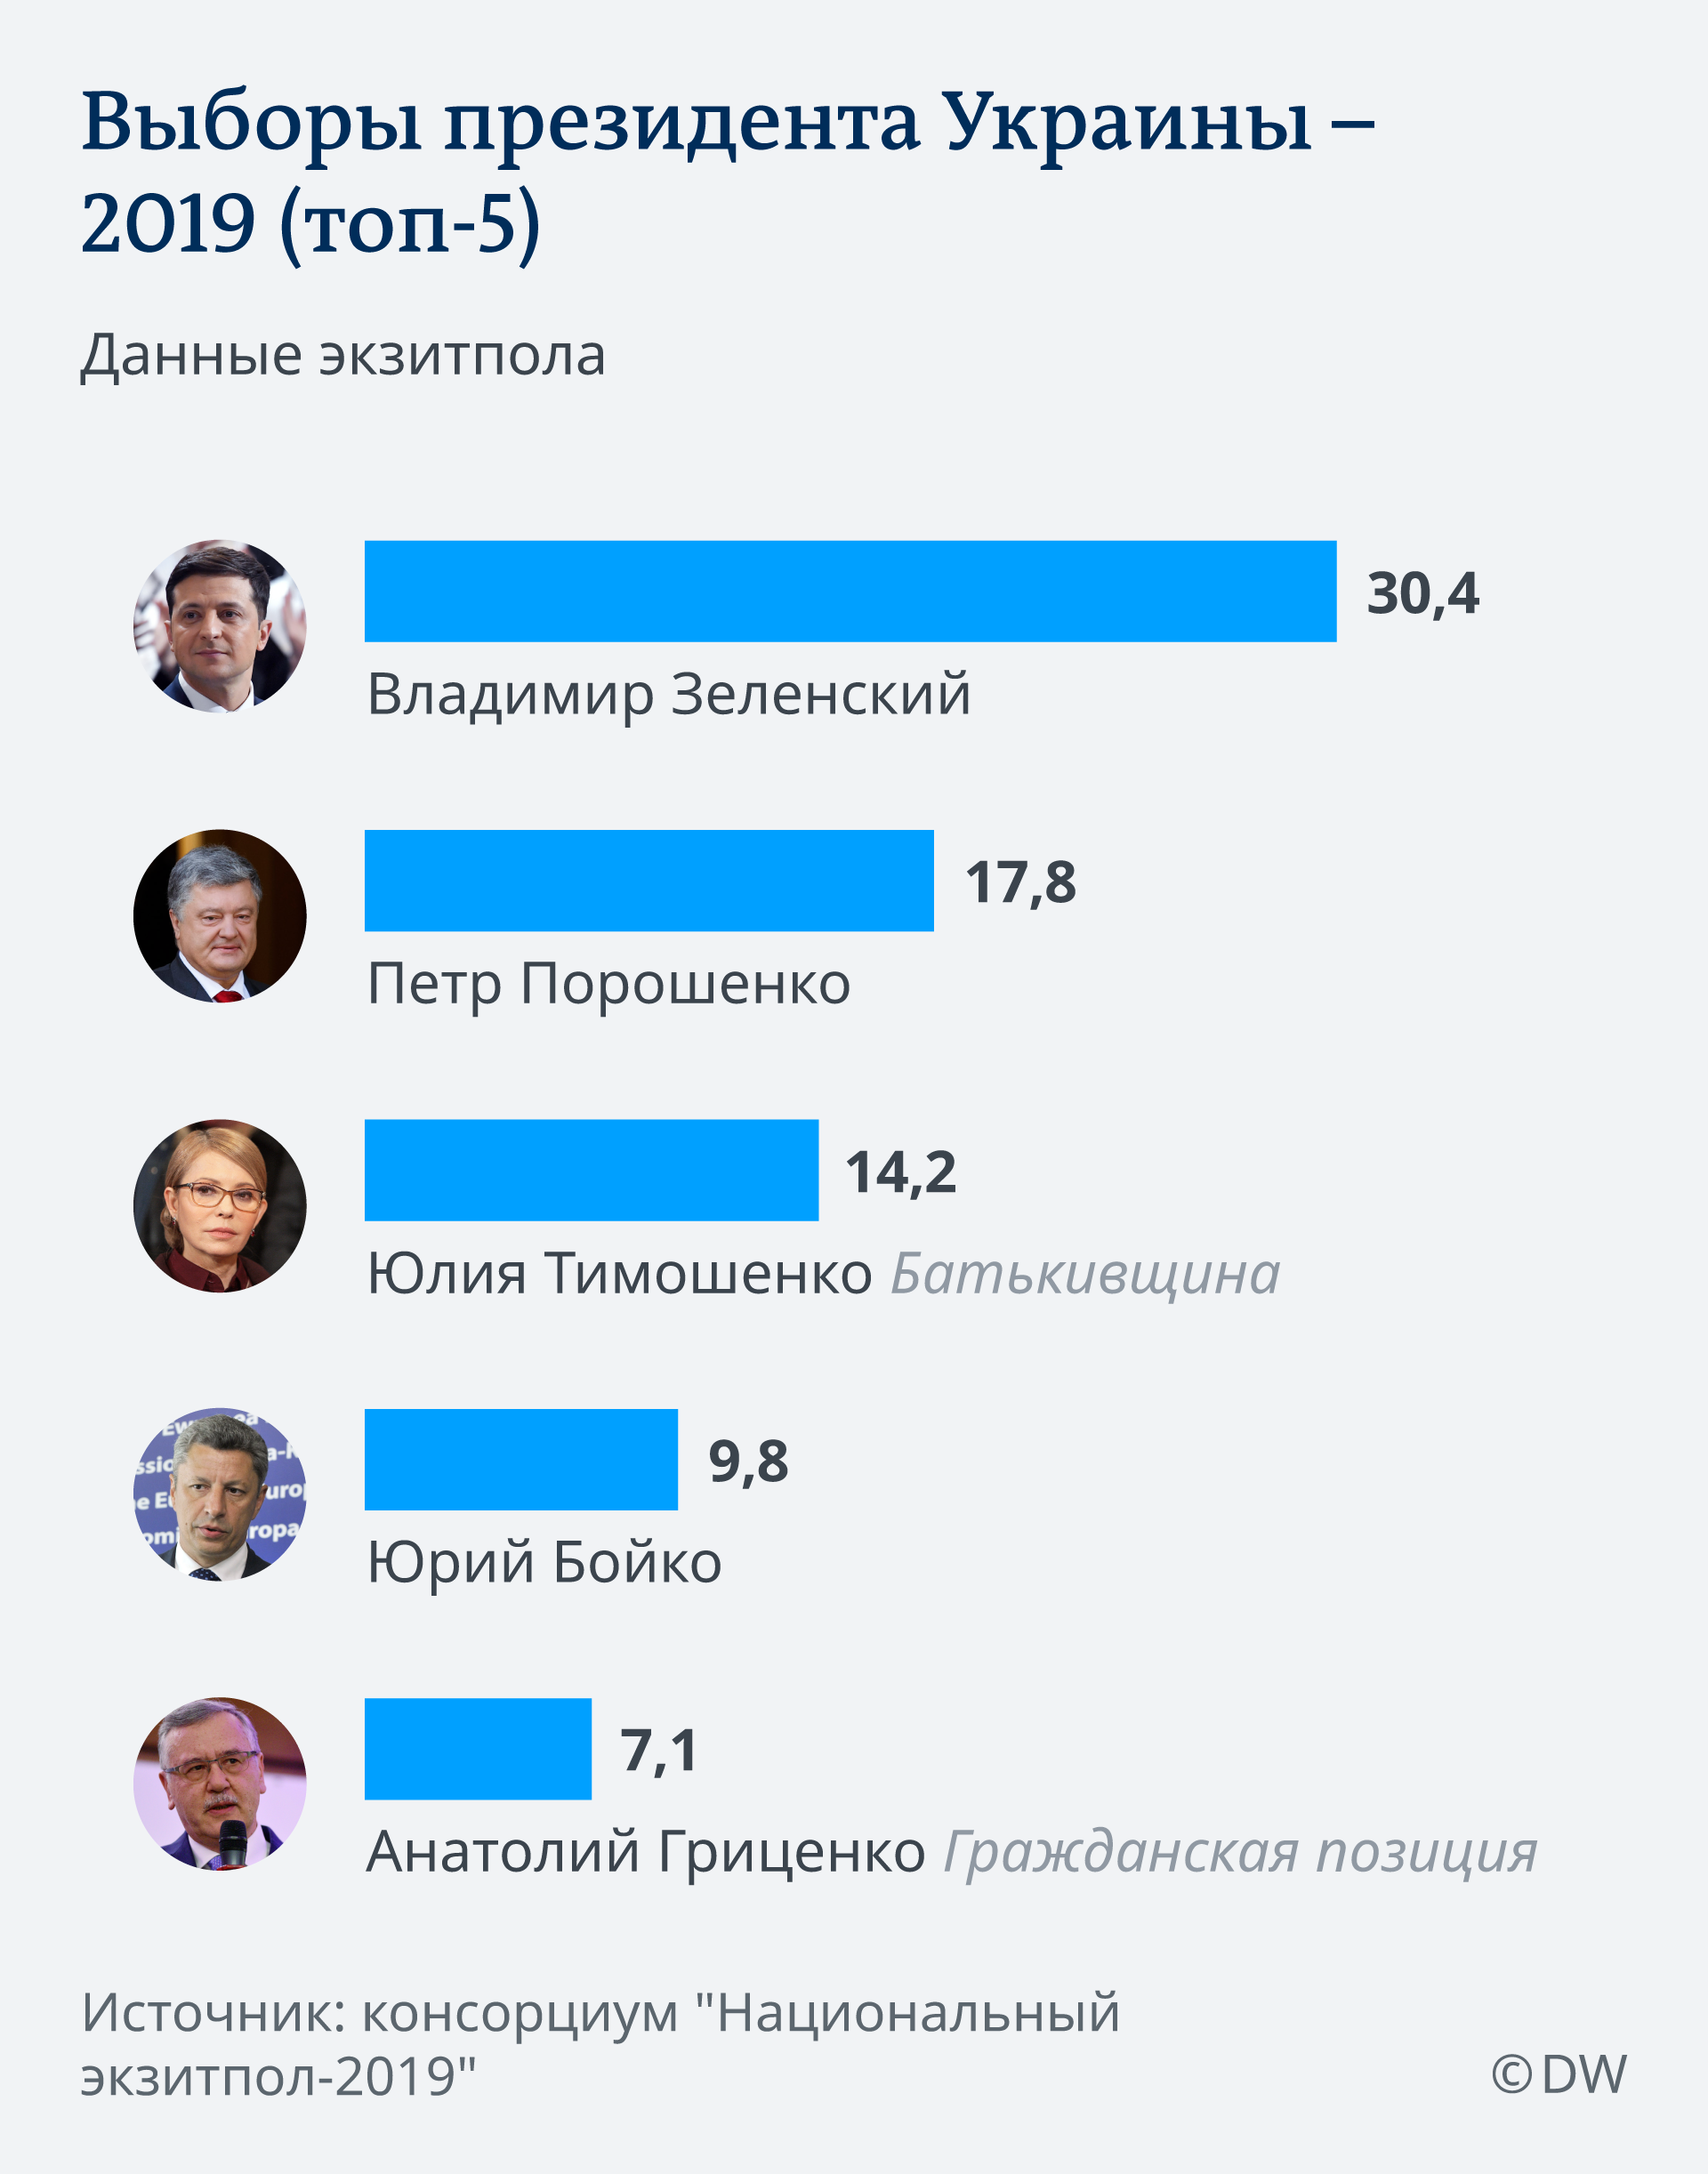 Инфографика Выборы президента Украины - 2019